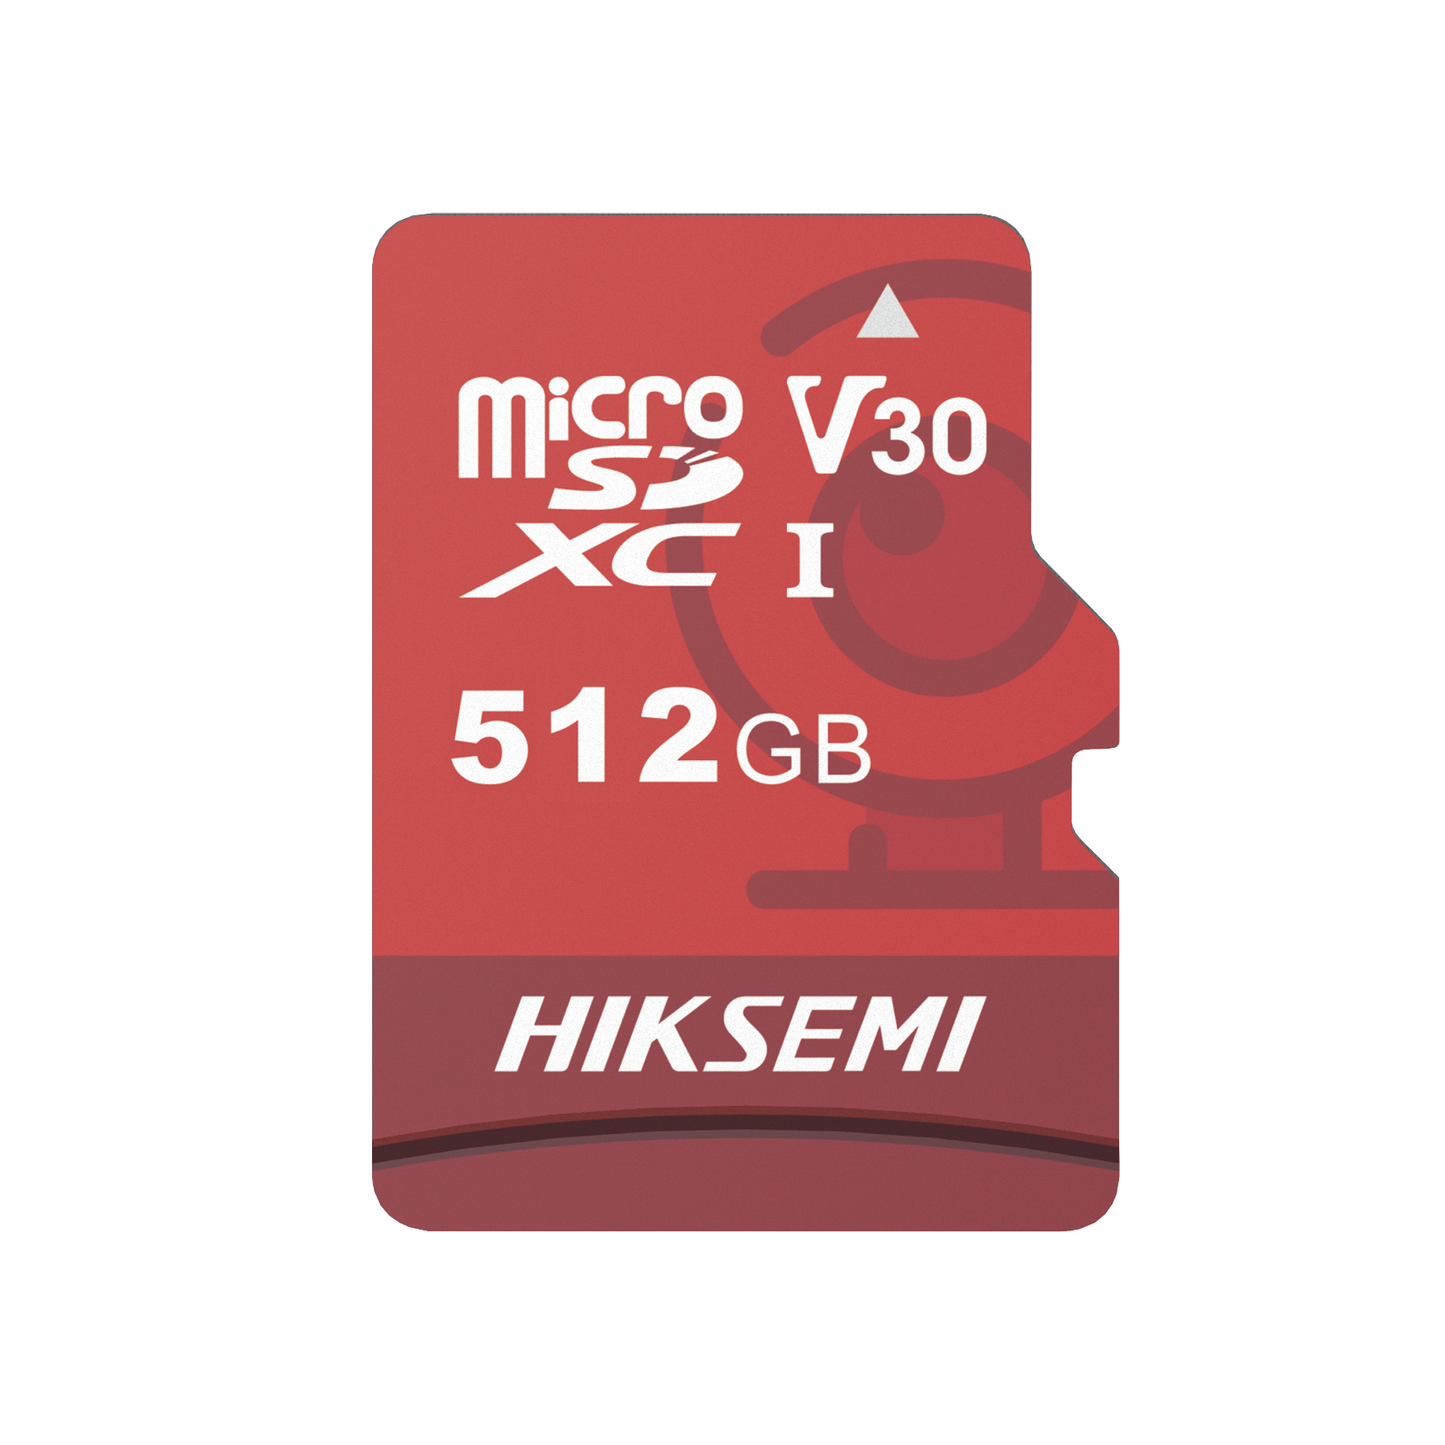 Memoria MicroSD / Clase 10 de 512 GB / Especializada Para Videovigilancia (Uso 24/7) / Compatibles con cámaras HIKVISION y Otras Marcas / 95 MB/s Lectura / 60 MB/s Escritura